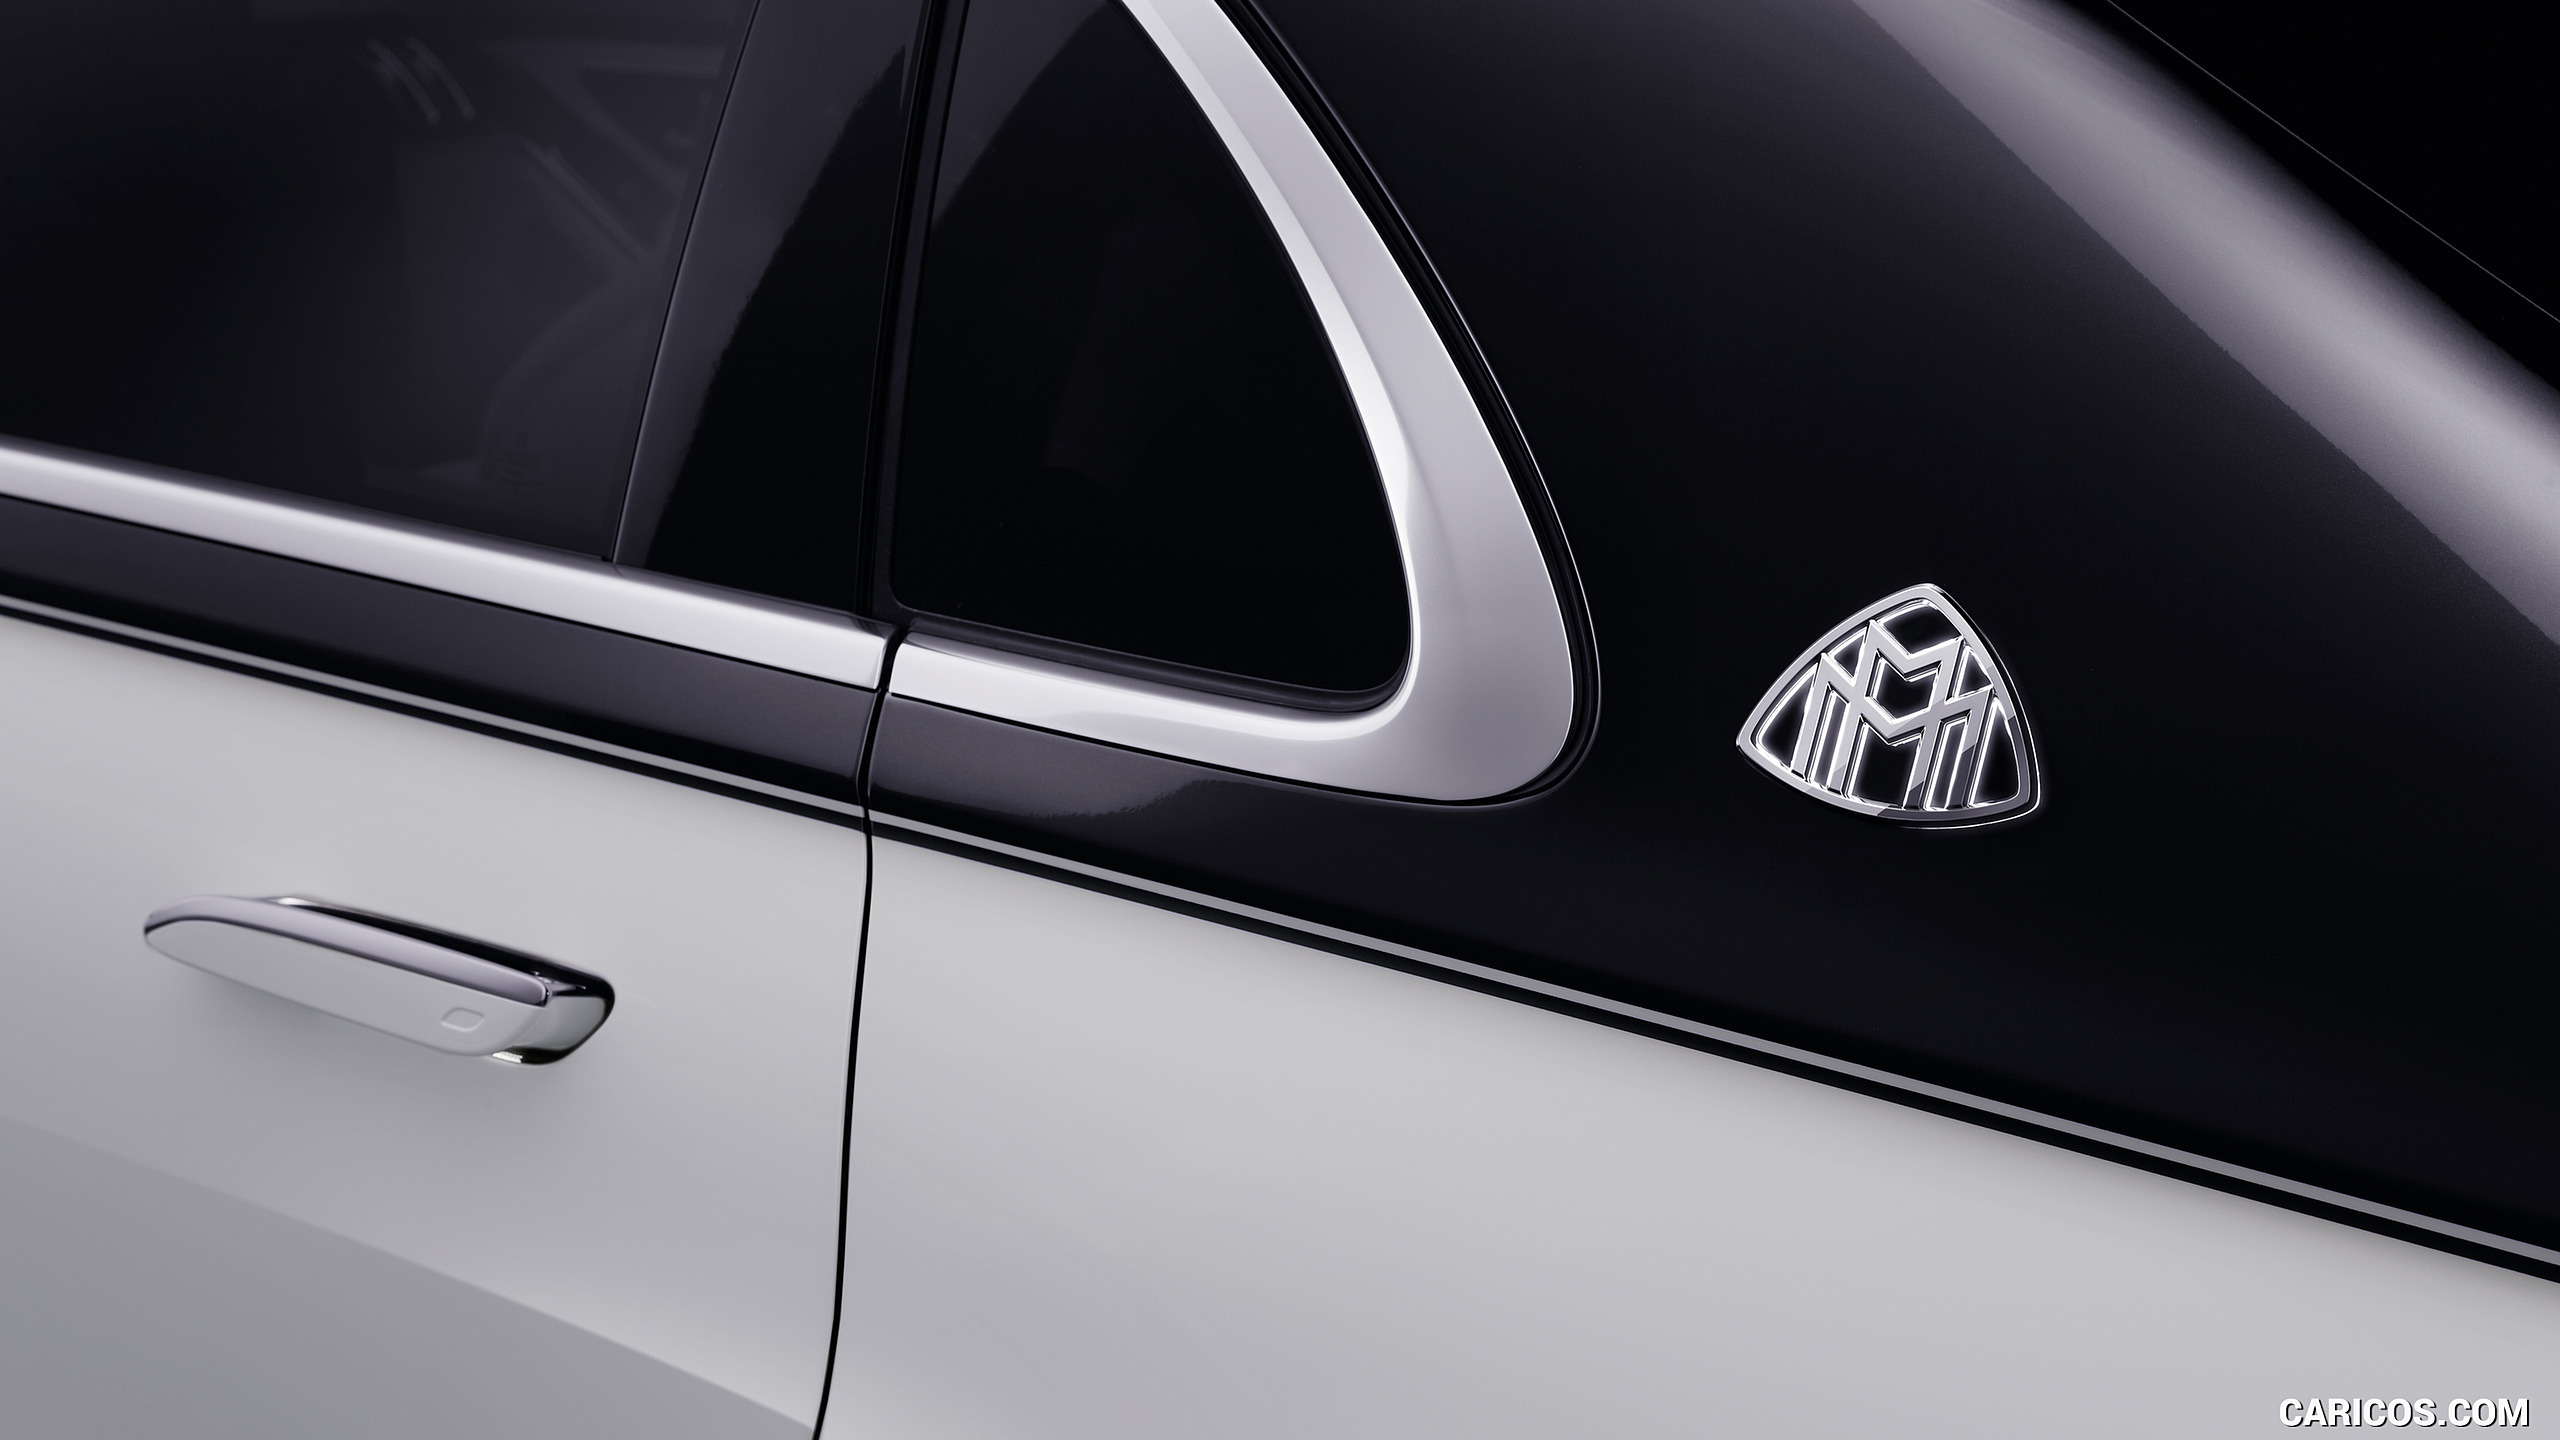 2021 Mercedes-Maybach S-Class (Color: Designo Diamond White Bright / Obsidian Black) - Badge, #93 of 157